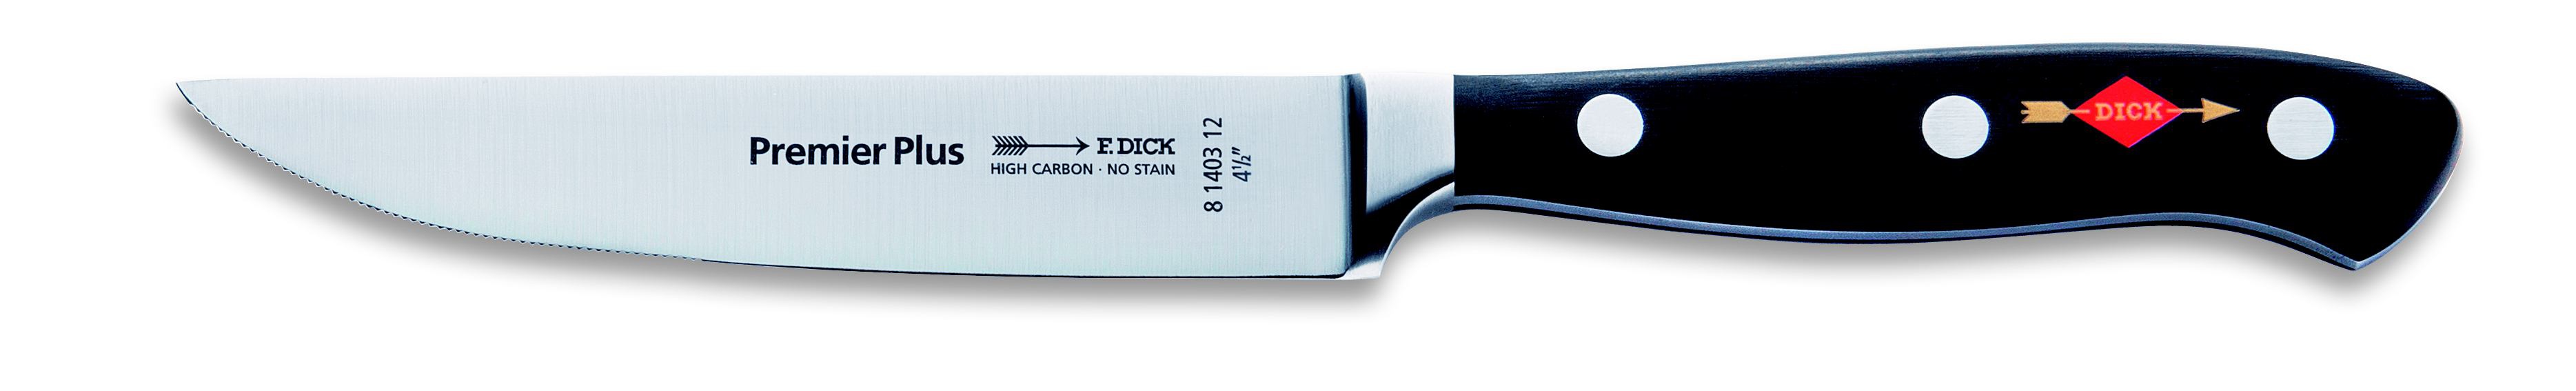 Steakový nůž kovaný s vlnitým výbrusem v délce 12 cm